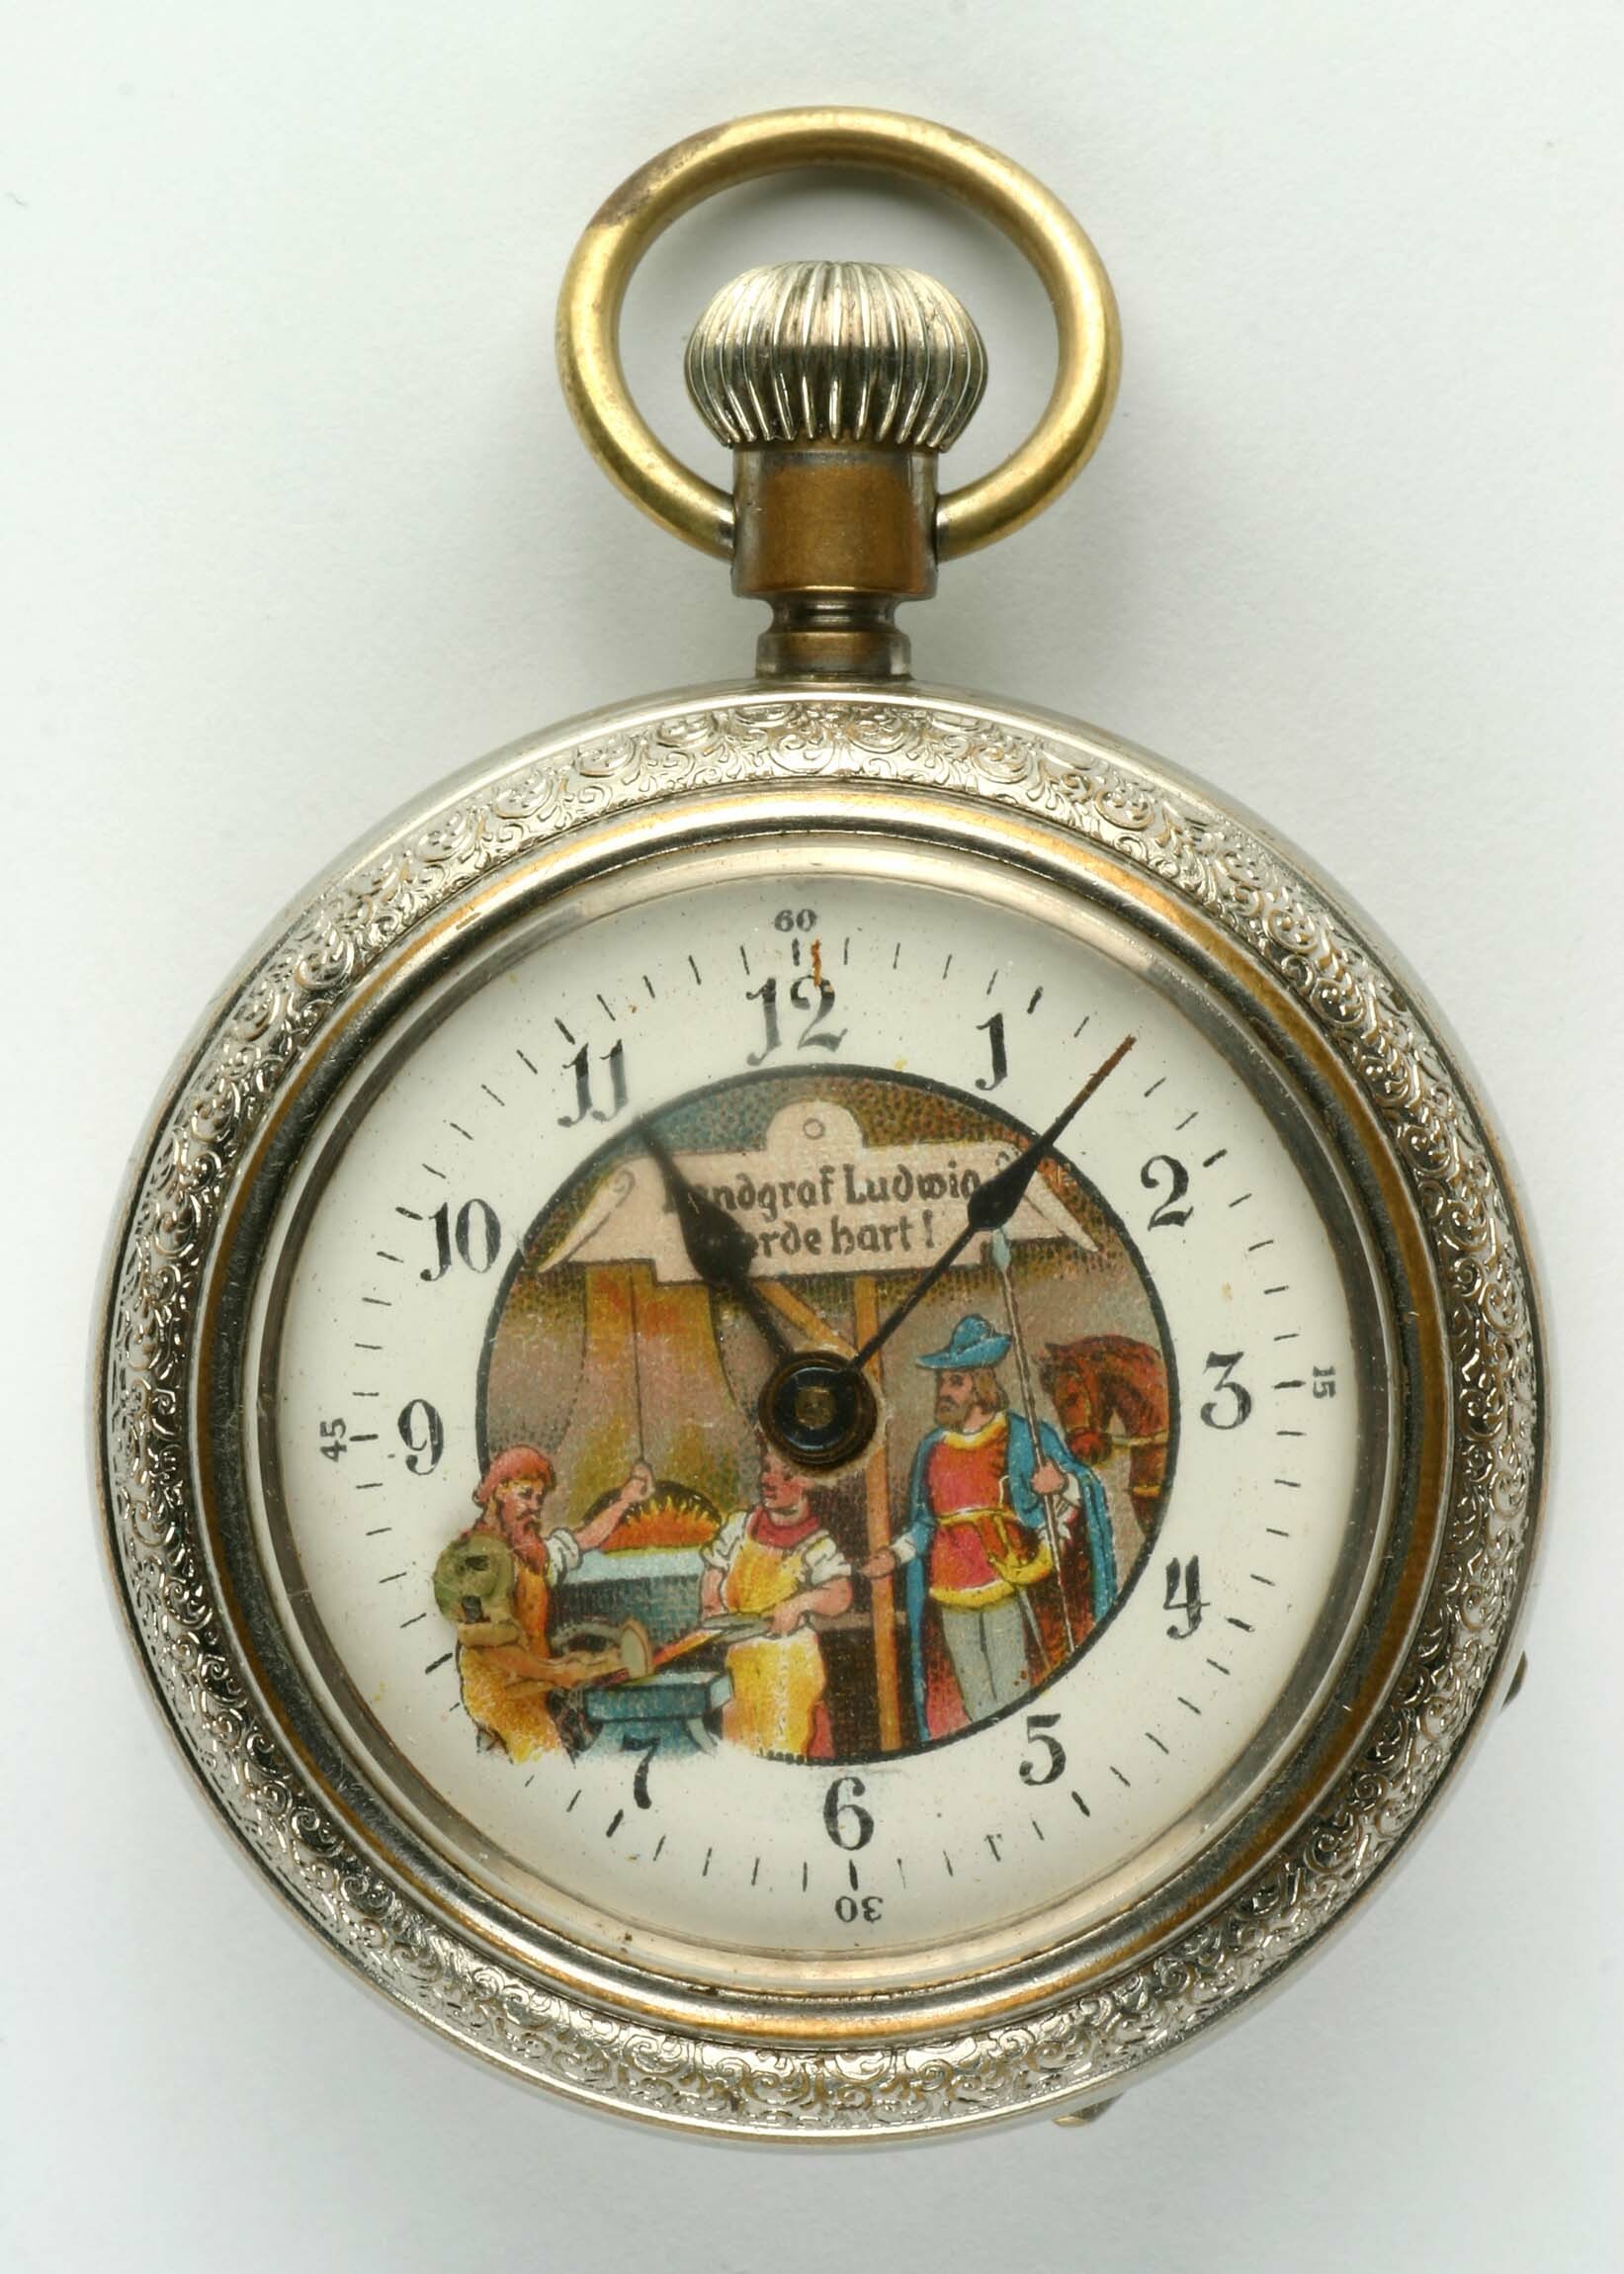 Taschenuhr mit Automat, Gebrüder Thiel, Ruhla, um 1900 (Deutsches Uhrenmuseum CC BY-SA)